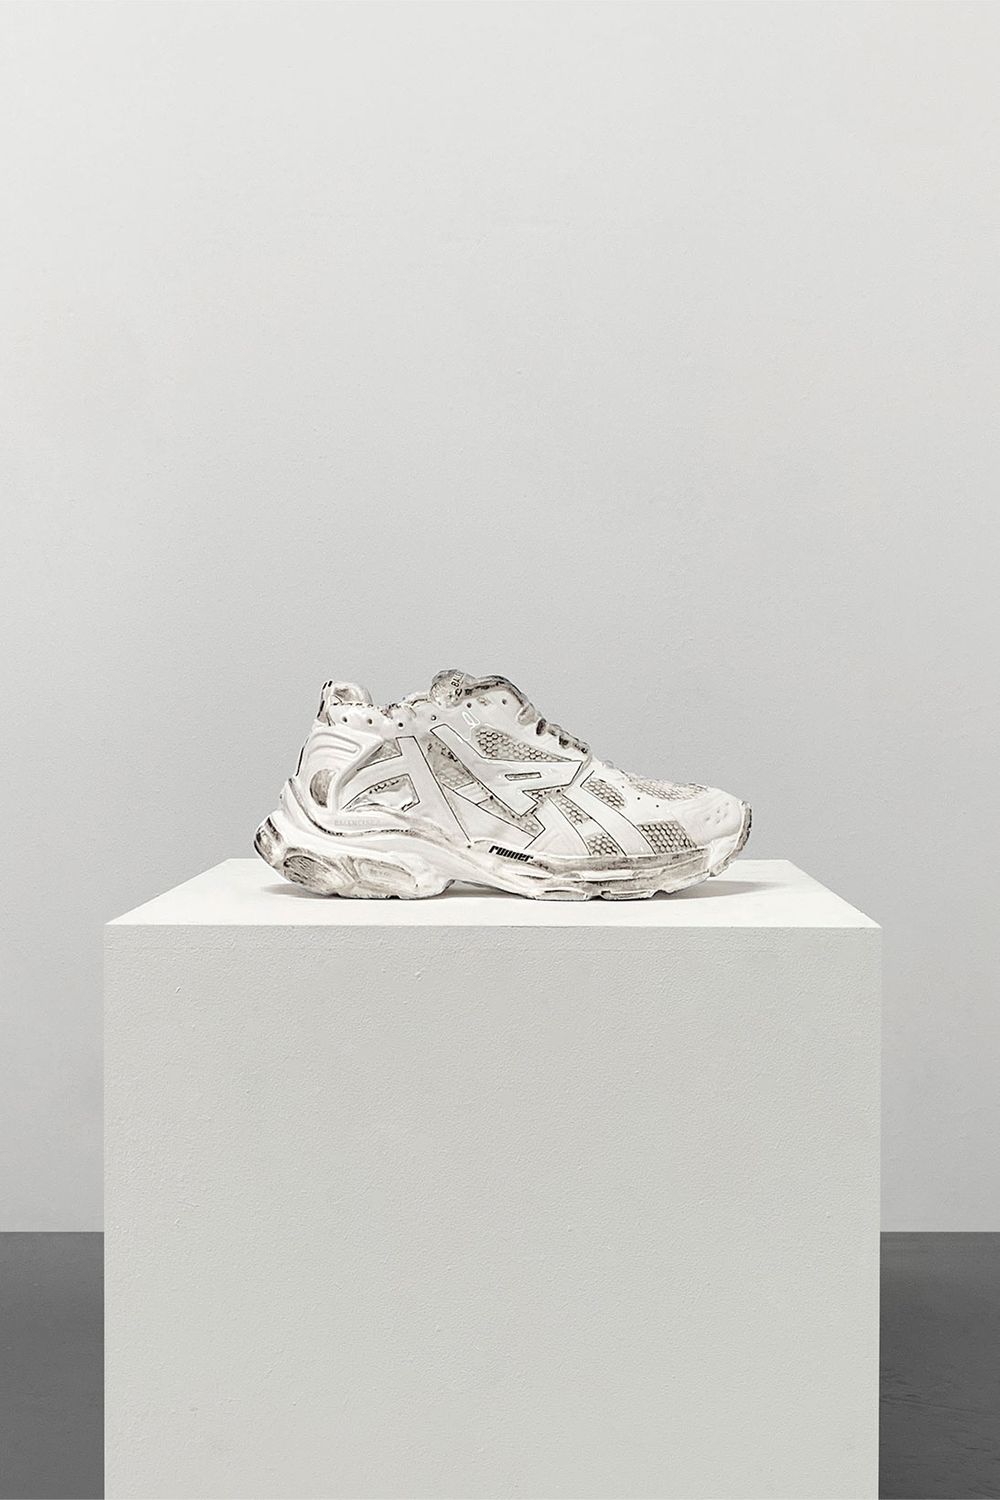 Mô phỏng theo tỷ lệ chuẩn xác từ một trong những đôi chunky sneakers đình đám của thương hiệu - Balenciaga Runner In White kích cỡ 42, mẫu điêu khắc gây hứng thú bởi sự tinh xảo và độ thực hoàn hảo đến khó tin.